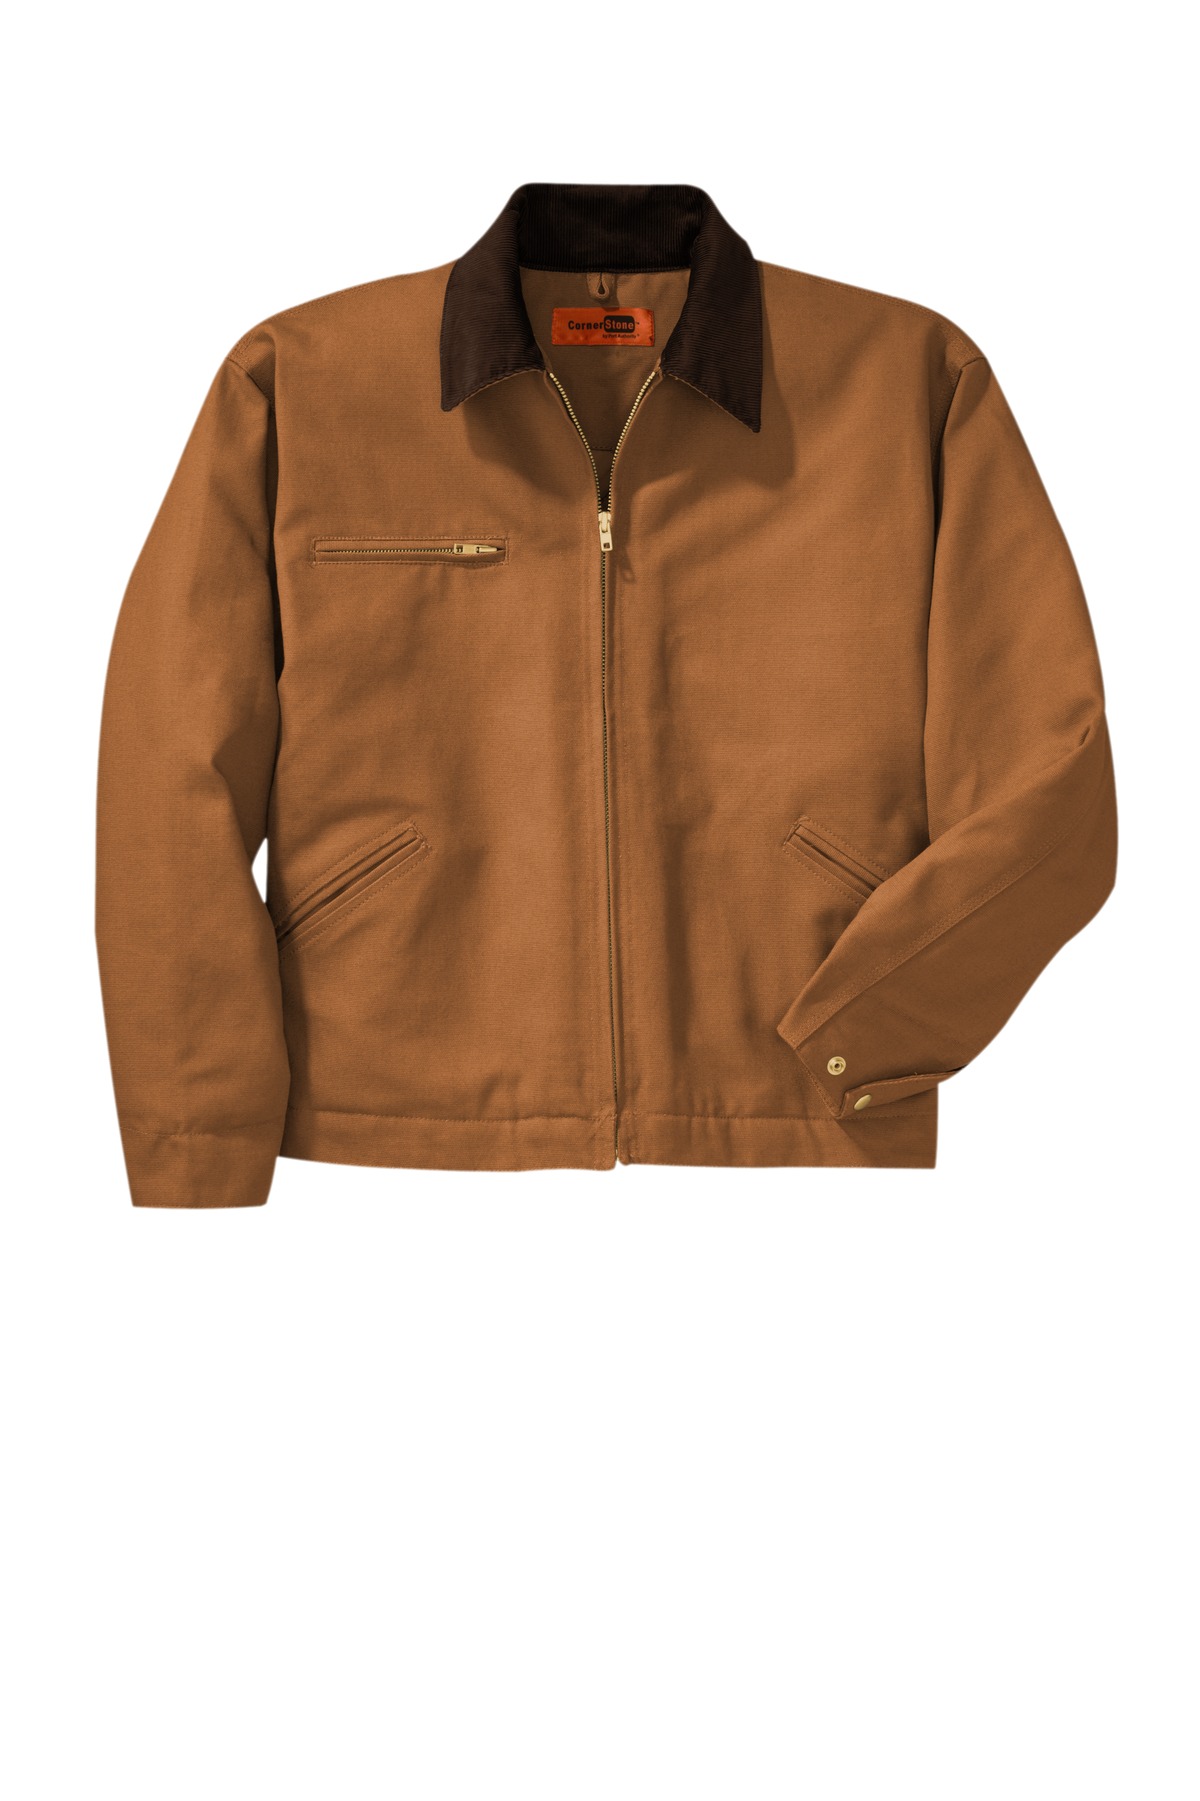 CornerStone Duck Cloth Work Jacket-2XL (Duck Brown) - Walmart